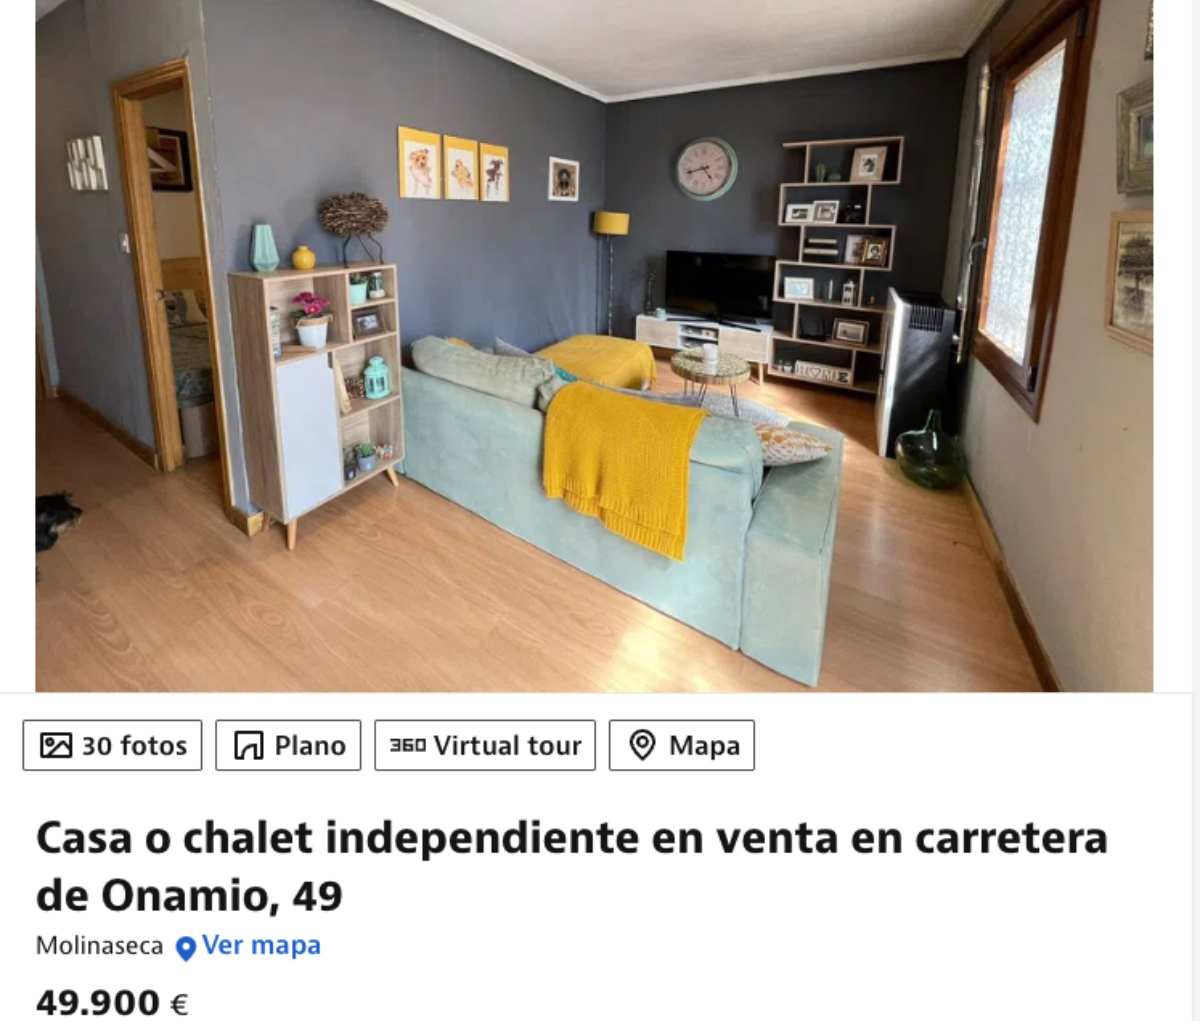 Casa independiente en Molinaseca por un importe de 49.900 euros 